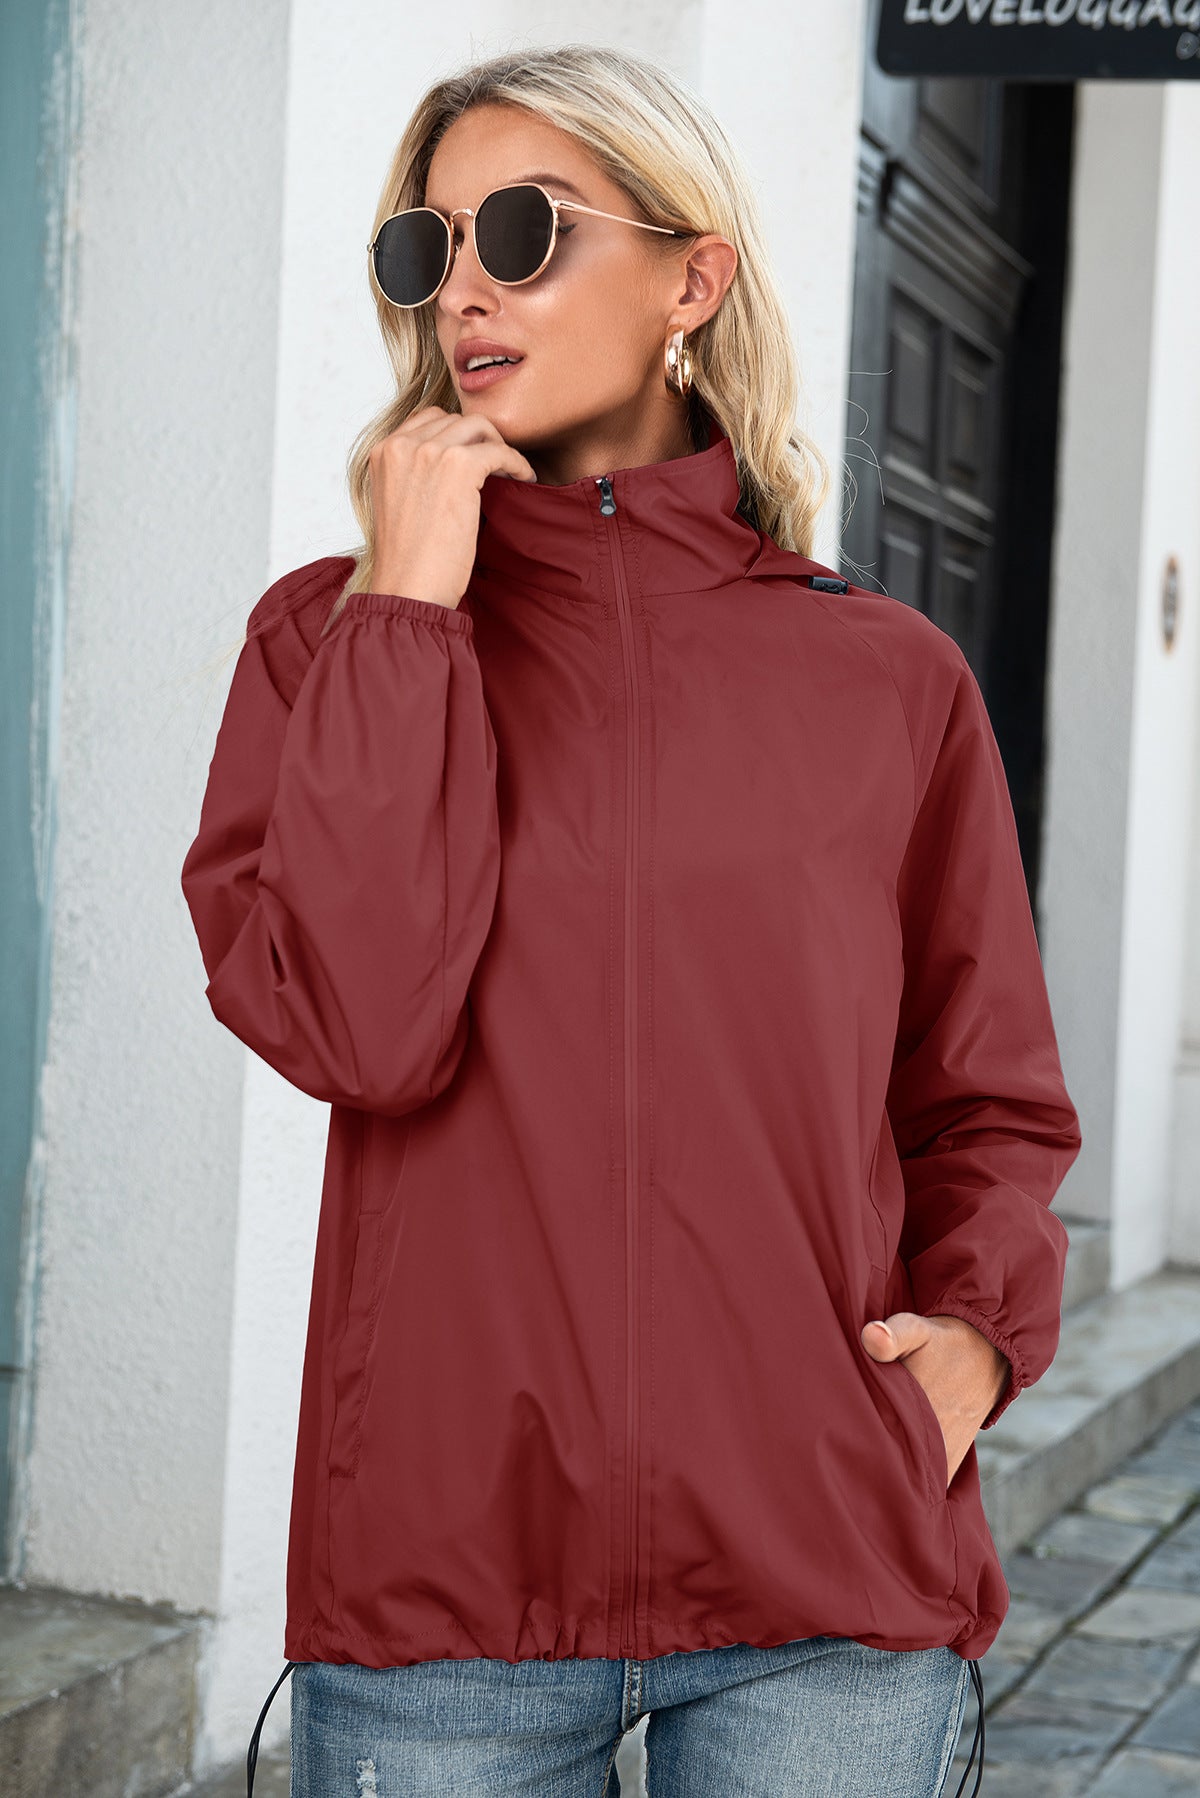 Women's Zipper Raincoat Outdoor Sports Mountaineering Windbreaker Coats